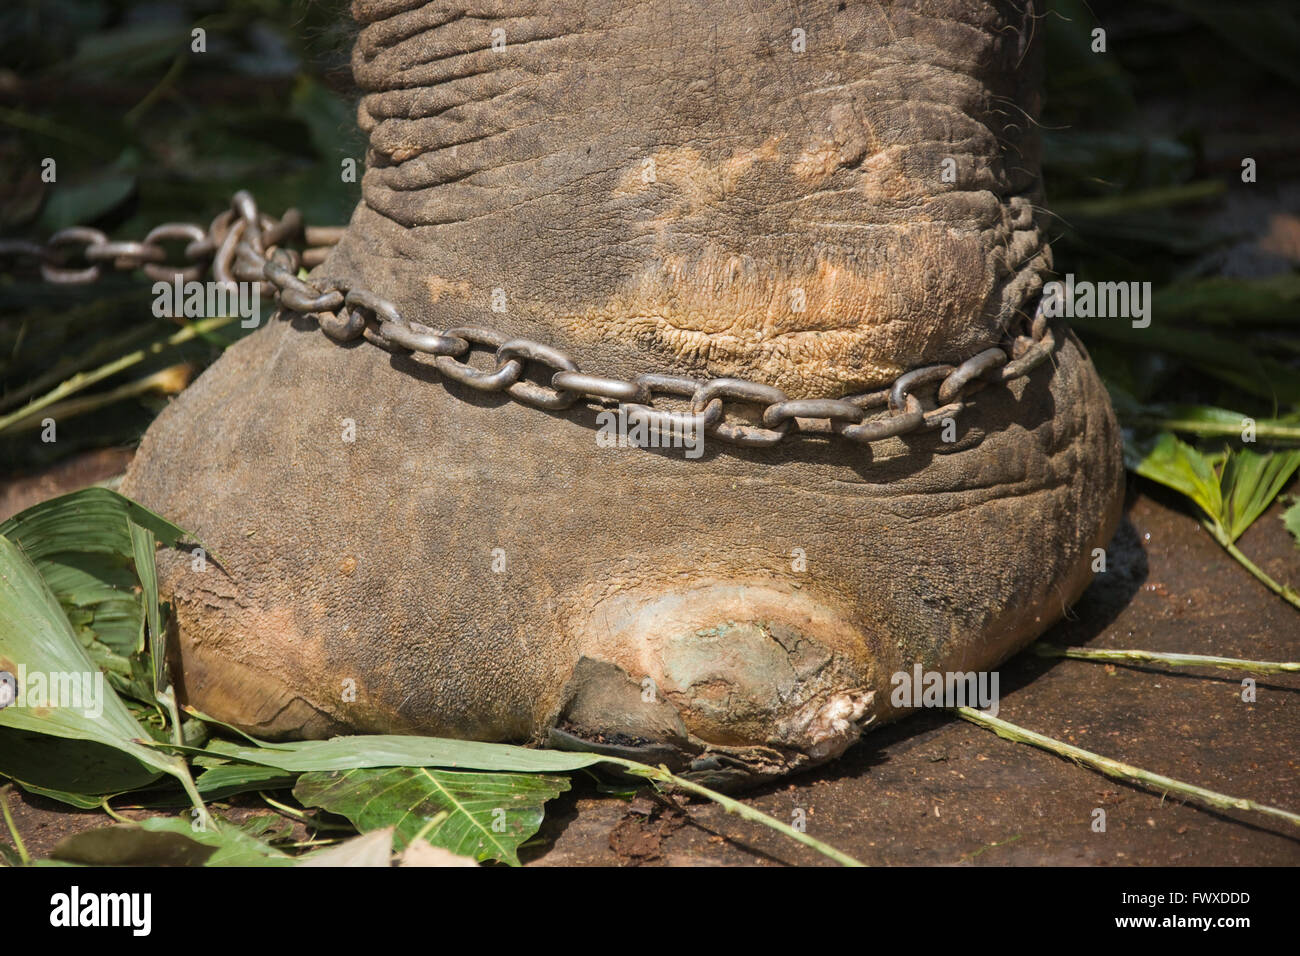 Elephant ankle shackled, Sri Lanka Stock Photo